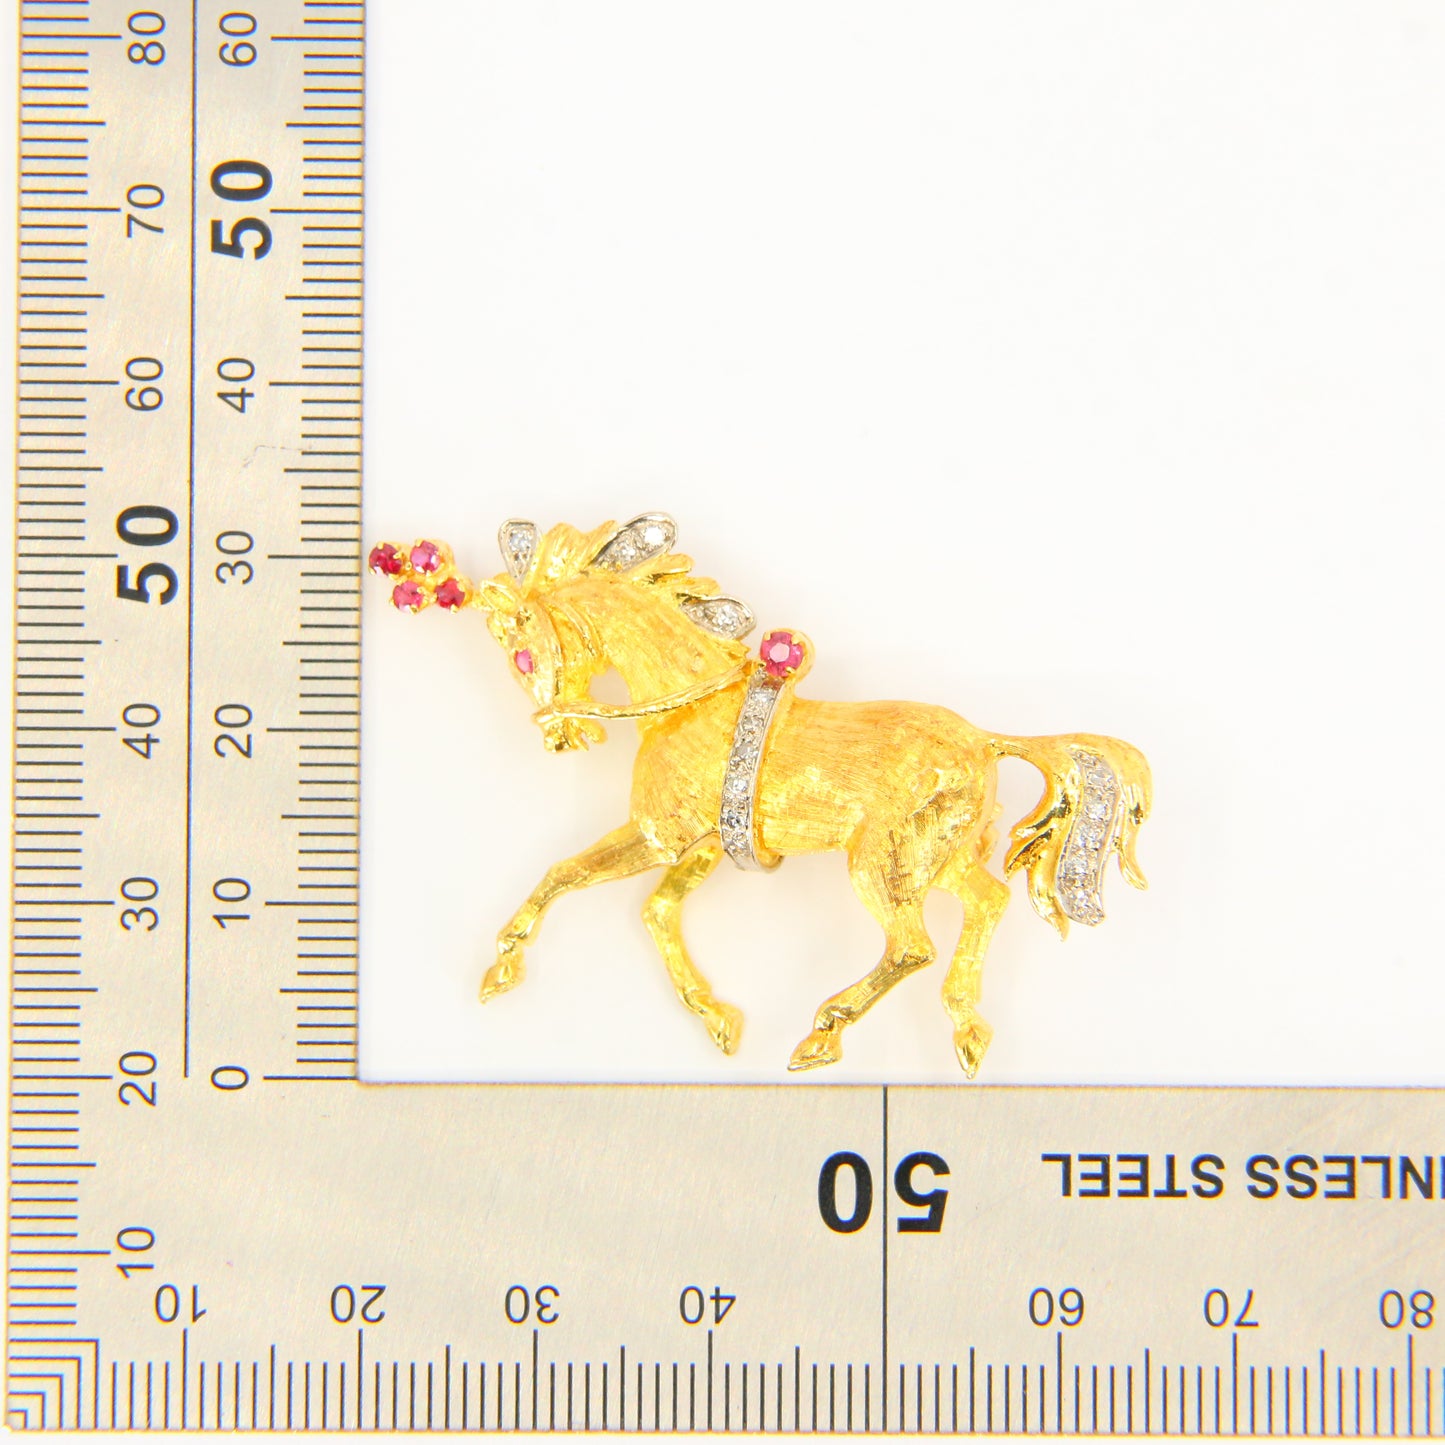 1969 Ben Rosenfeld Diamant- und Rubin-Pferdebrosche aus 18 Karat Gelbgold mit Punze